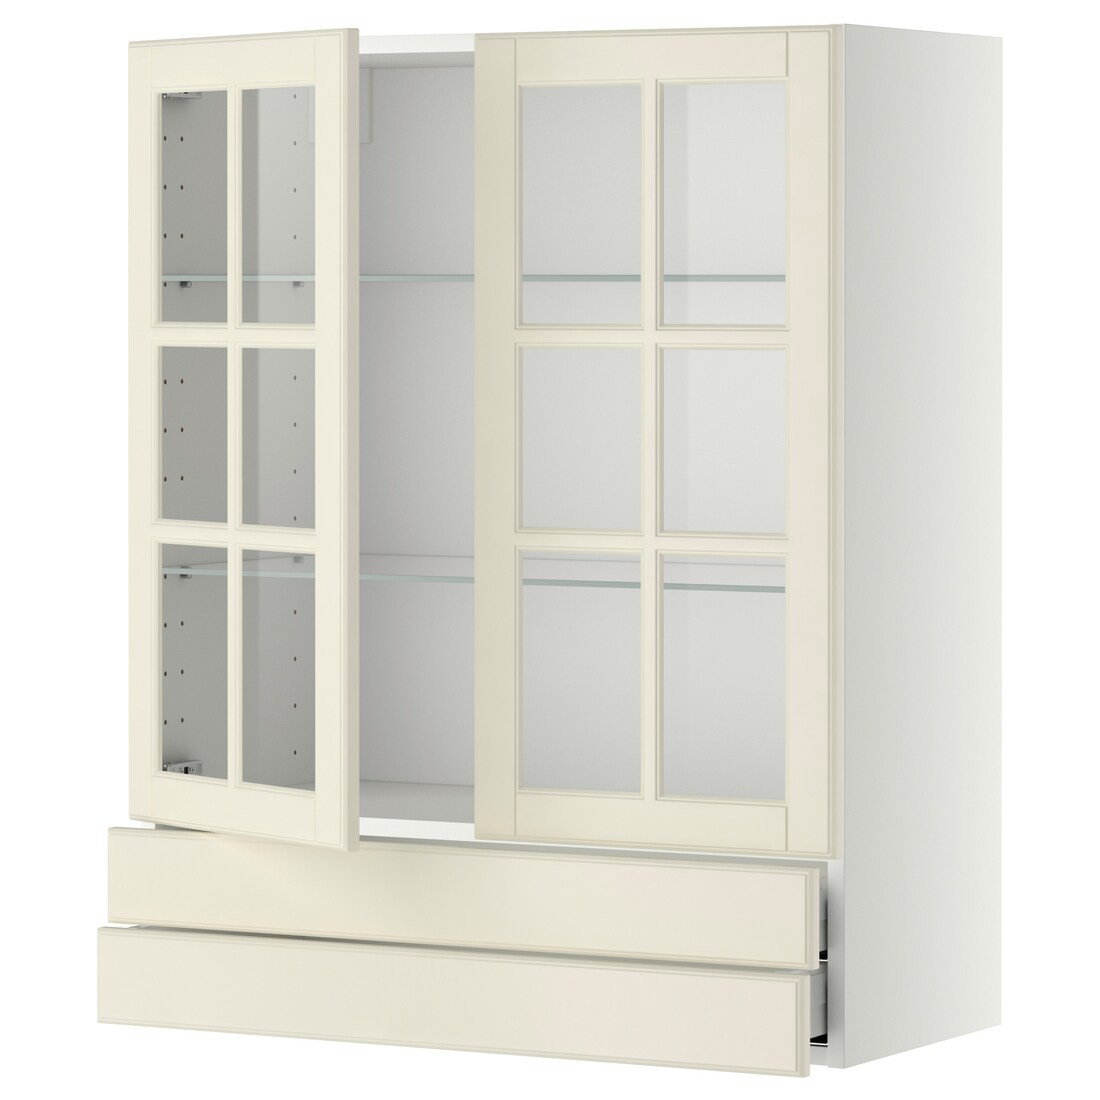 IKEA METOD МЕТОД / MAXIMERA МАКСИМЕРА Навесной шкаф / 2 стеклянные дверцы / 2 ящика, белый / Bodbyn кремовый, 80x100 см 69394995 693.949.95